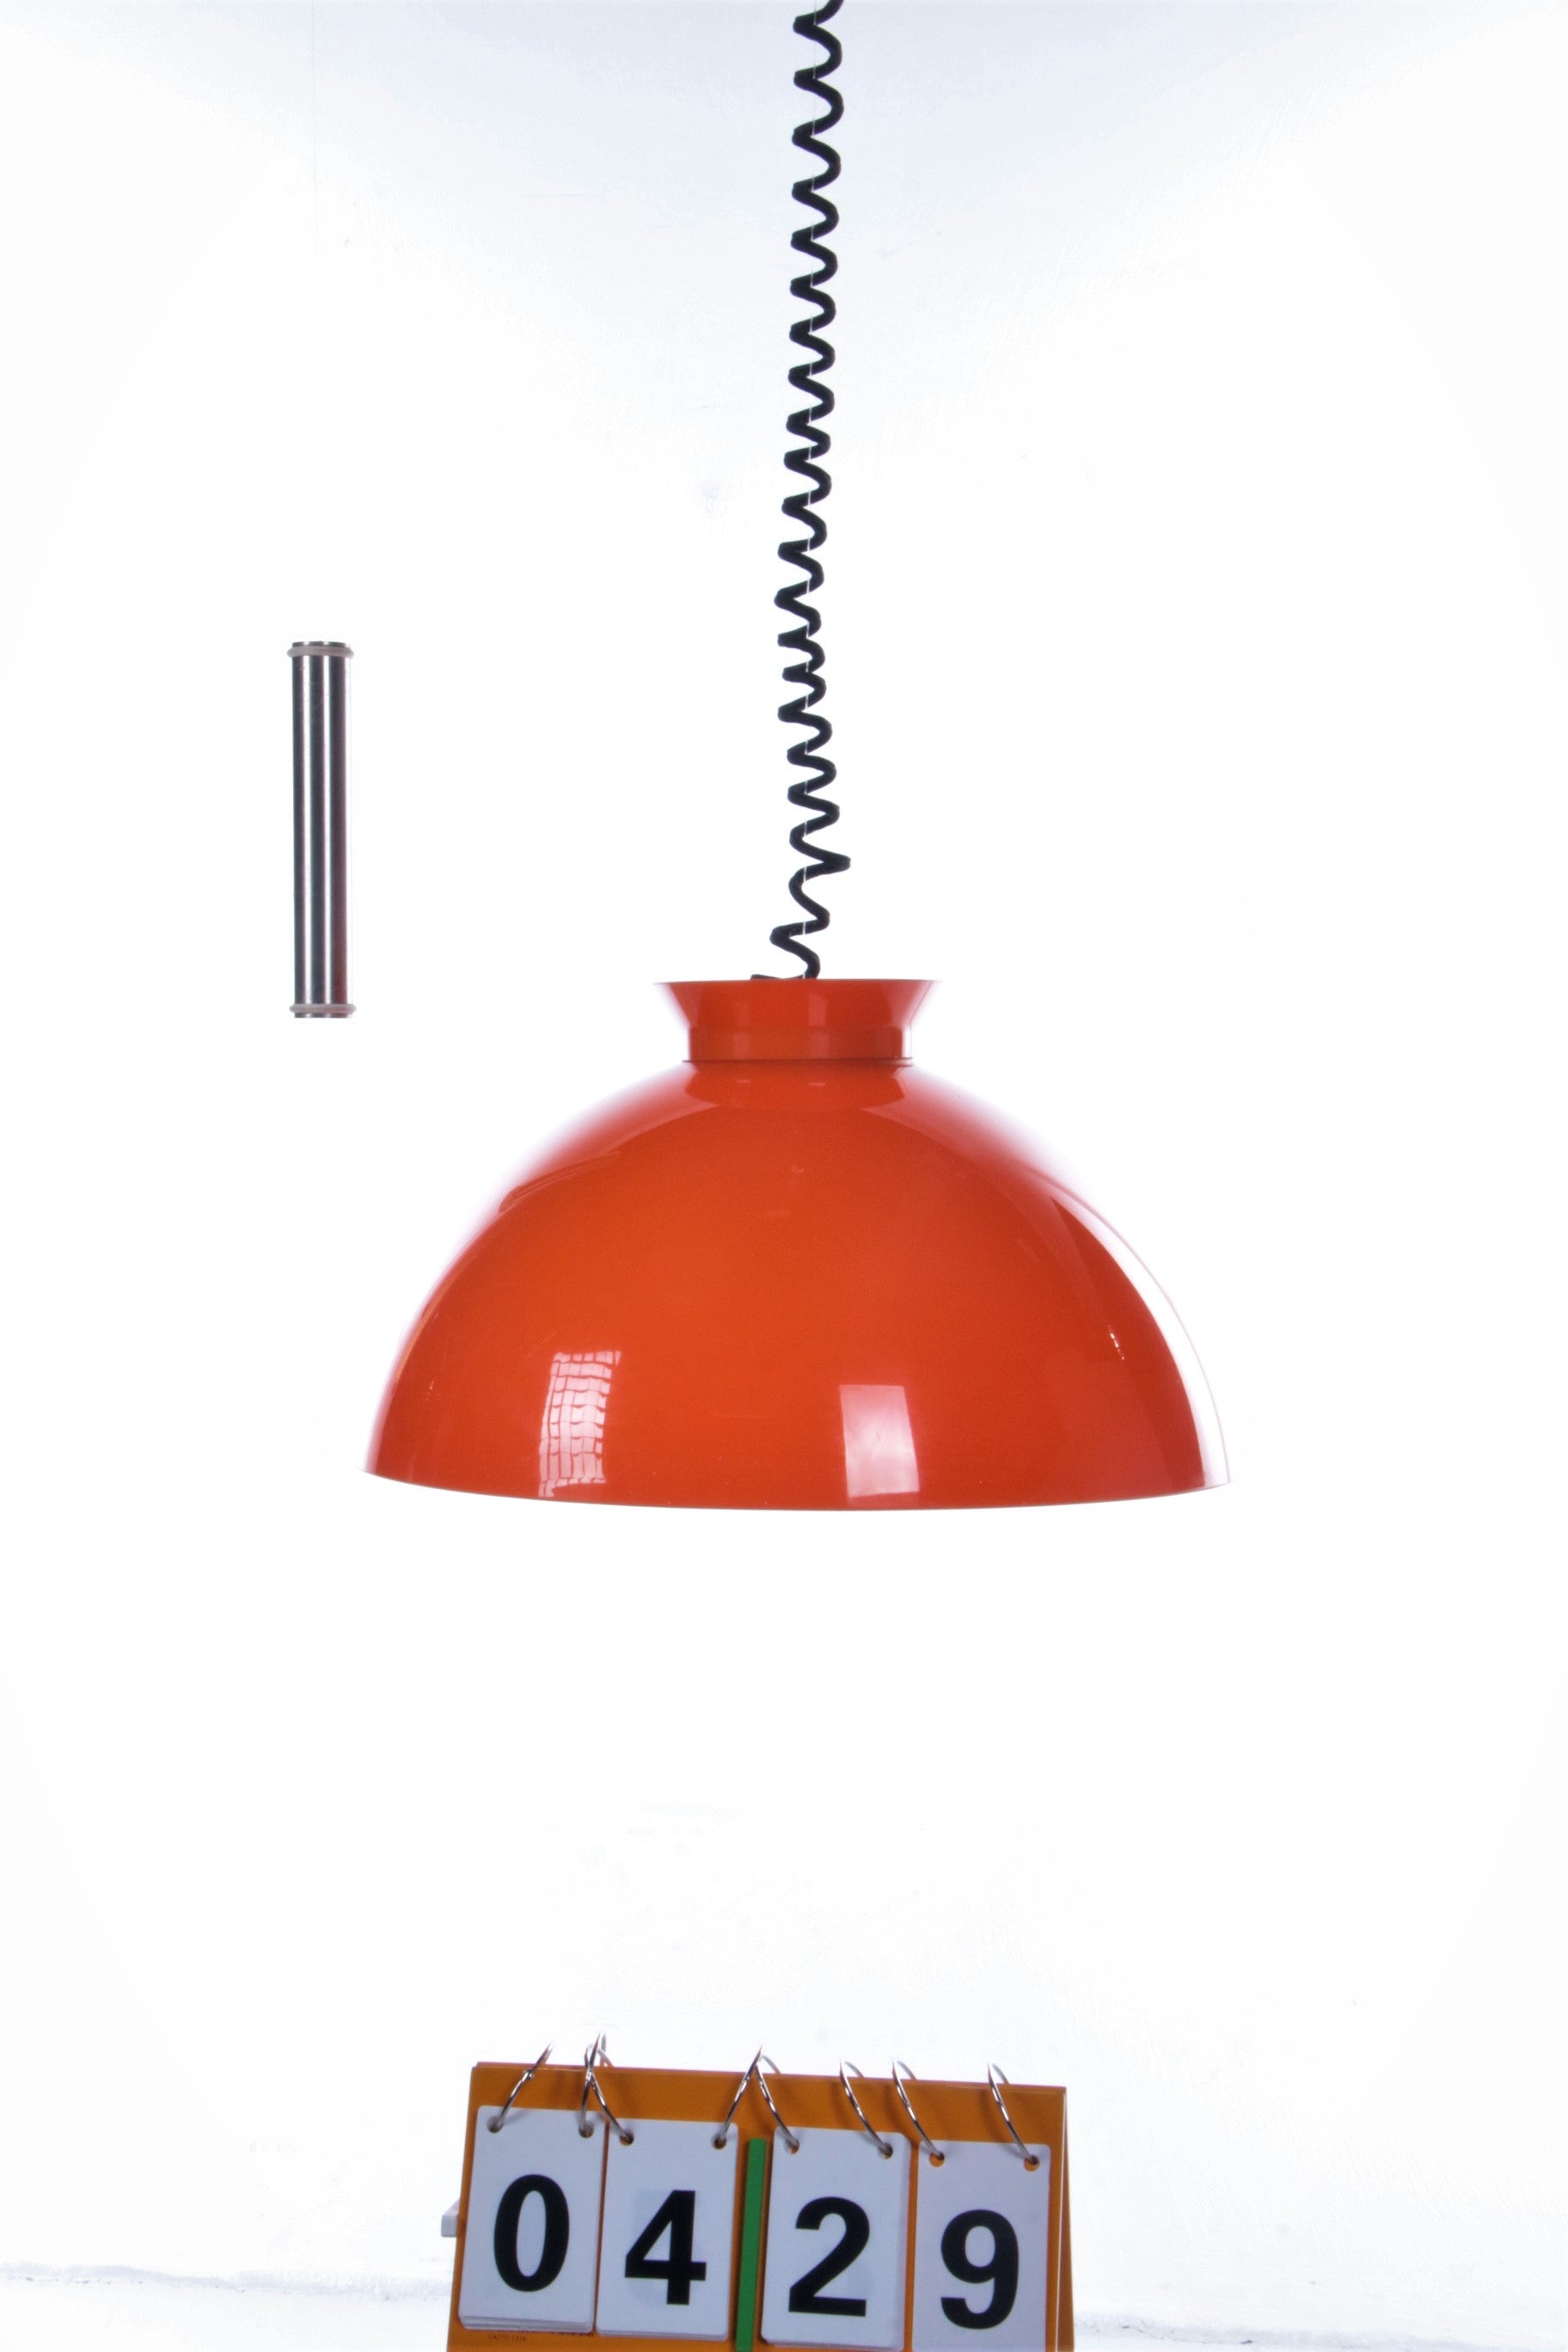 ventilatie Temmen Opknappen Pendant lamp Orange design by Achille & Pier Giacomo by Kartell,1959 –  Timeless-Art